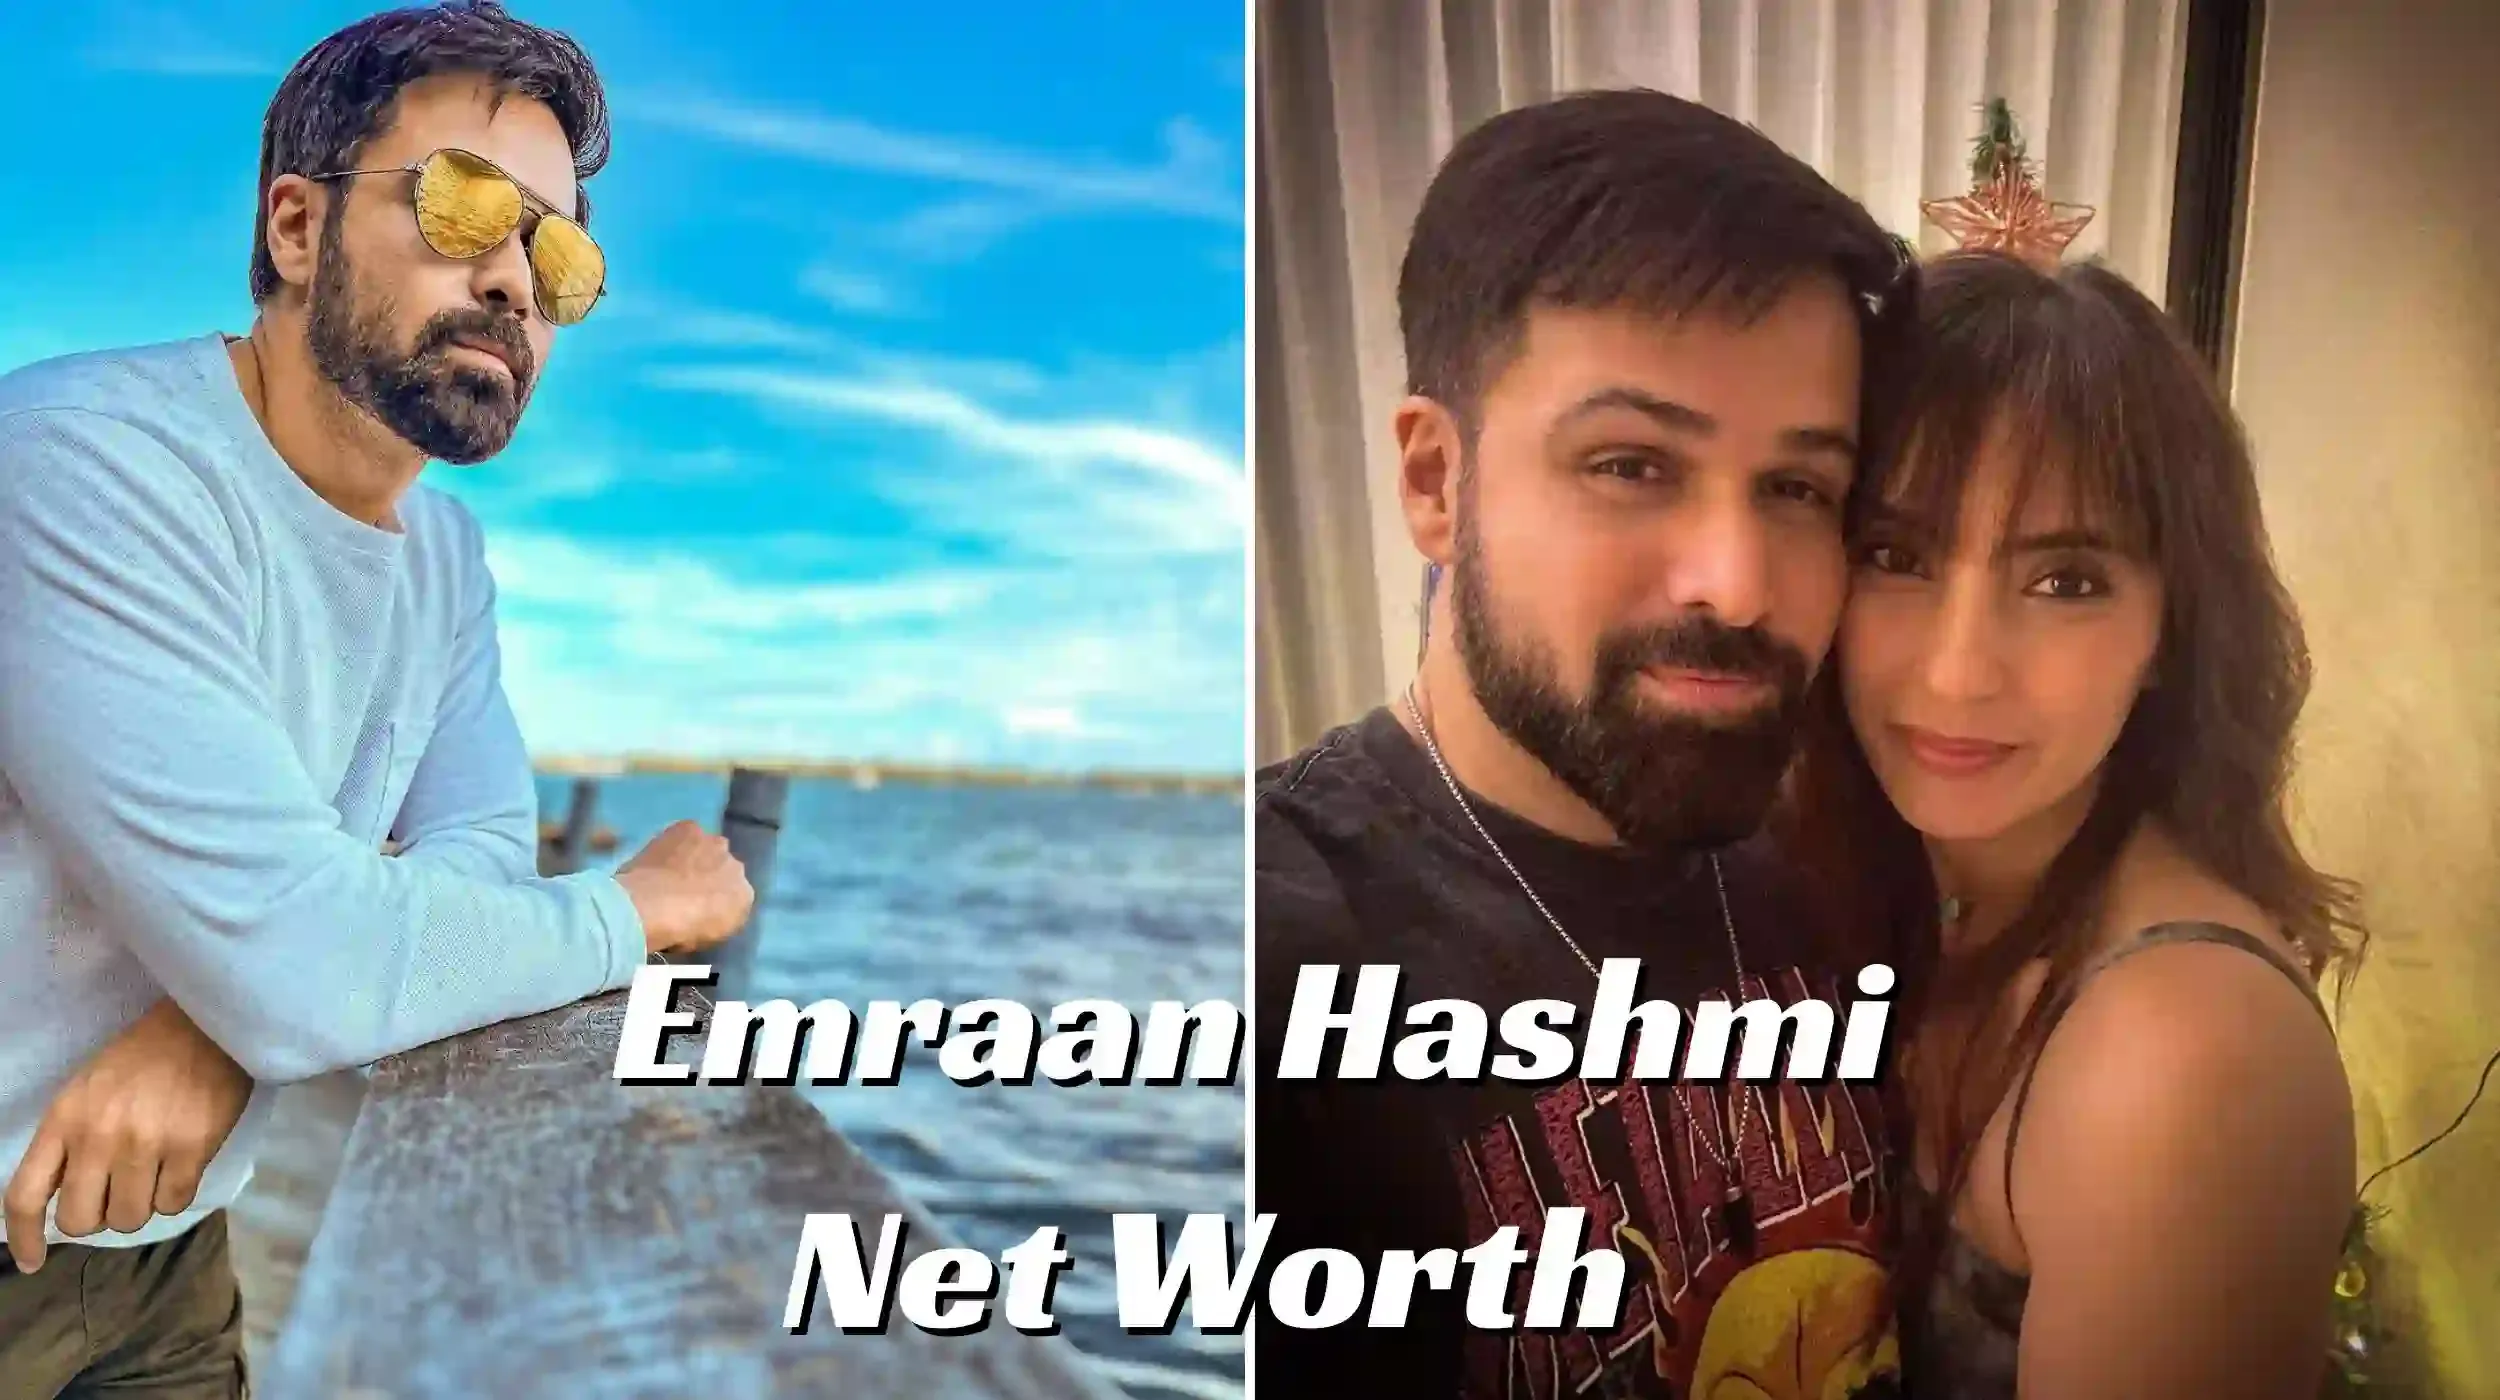 Emraan hashmi net worth: